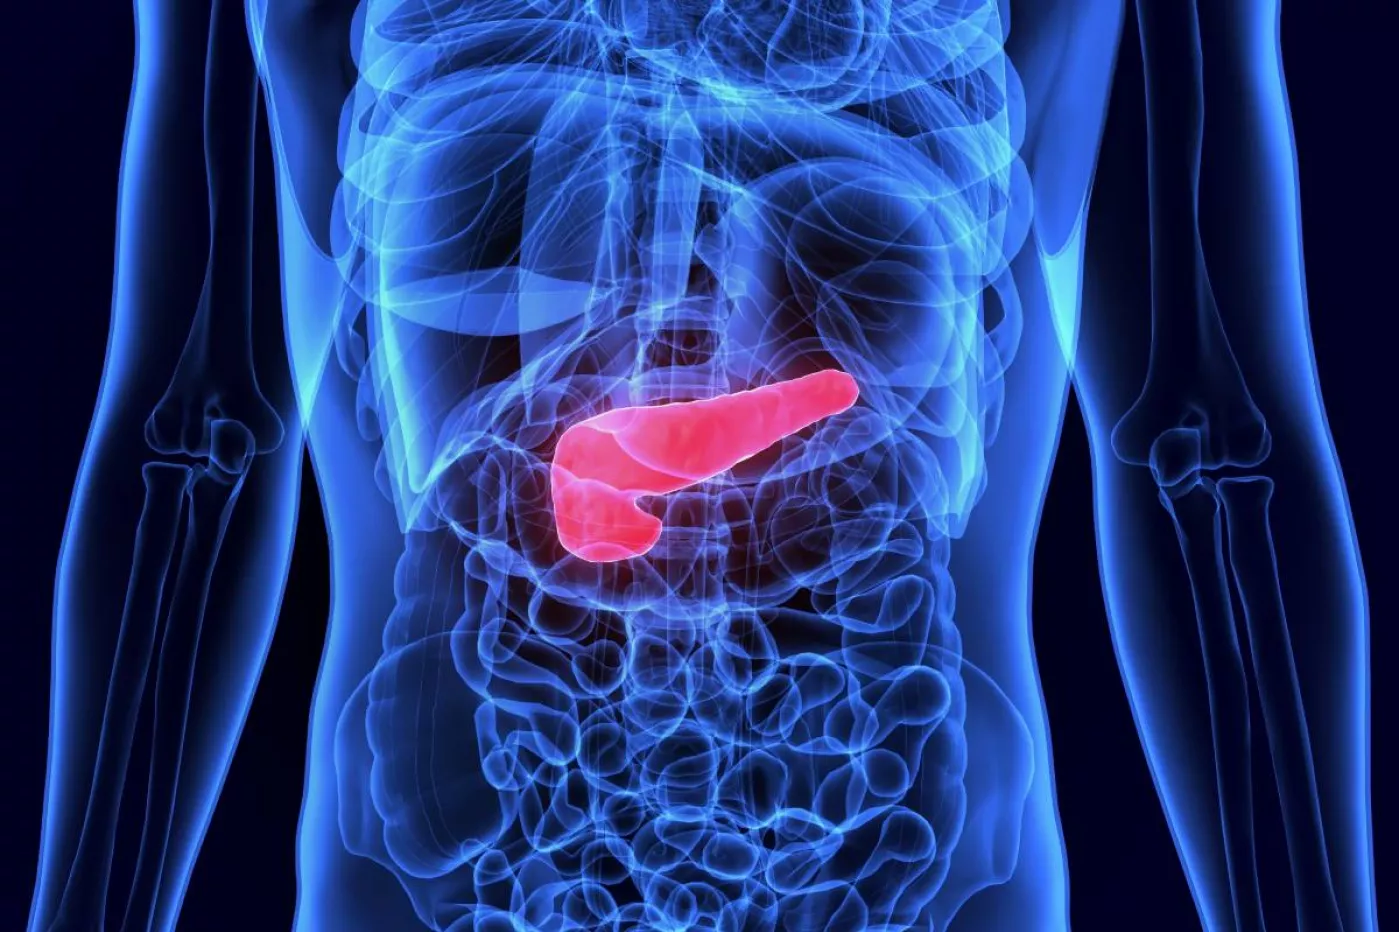 La mortalidad en cáncer de páncreas se sitúa en torno al 95% en menos de 12 meses